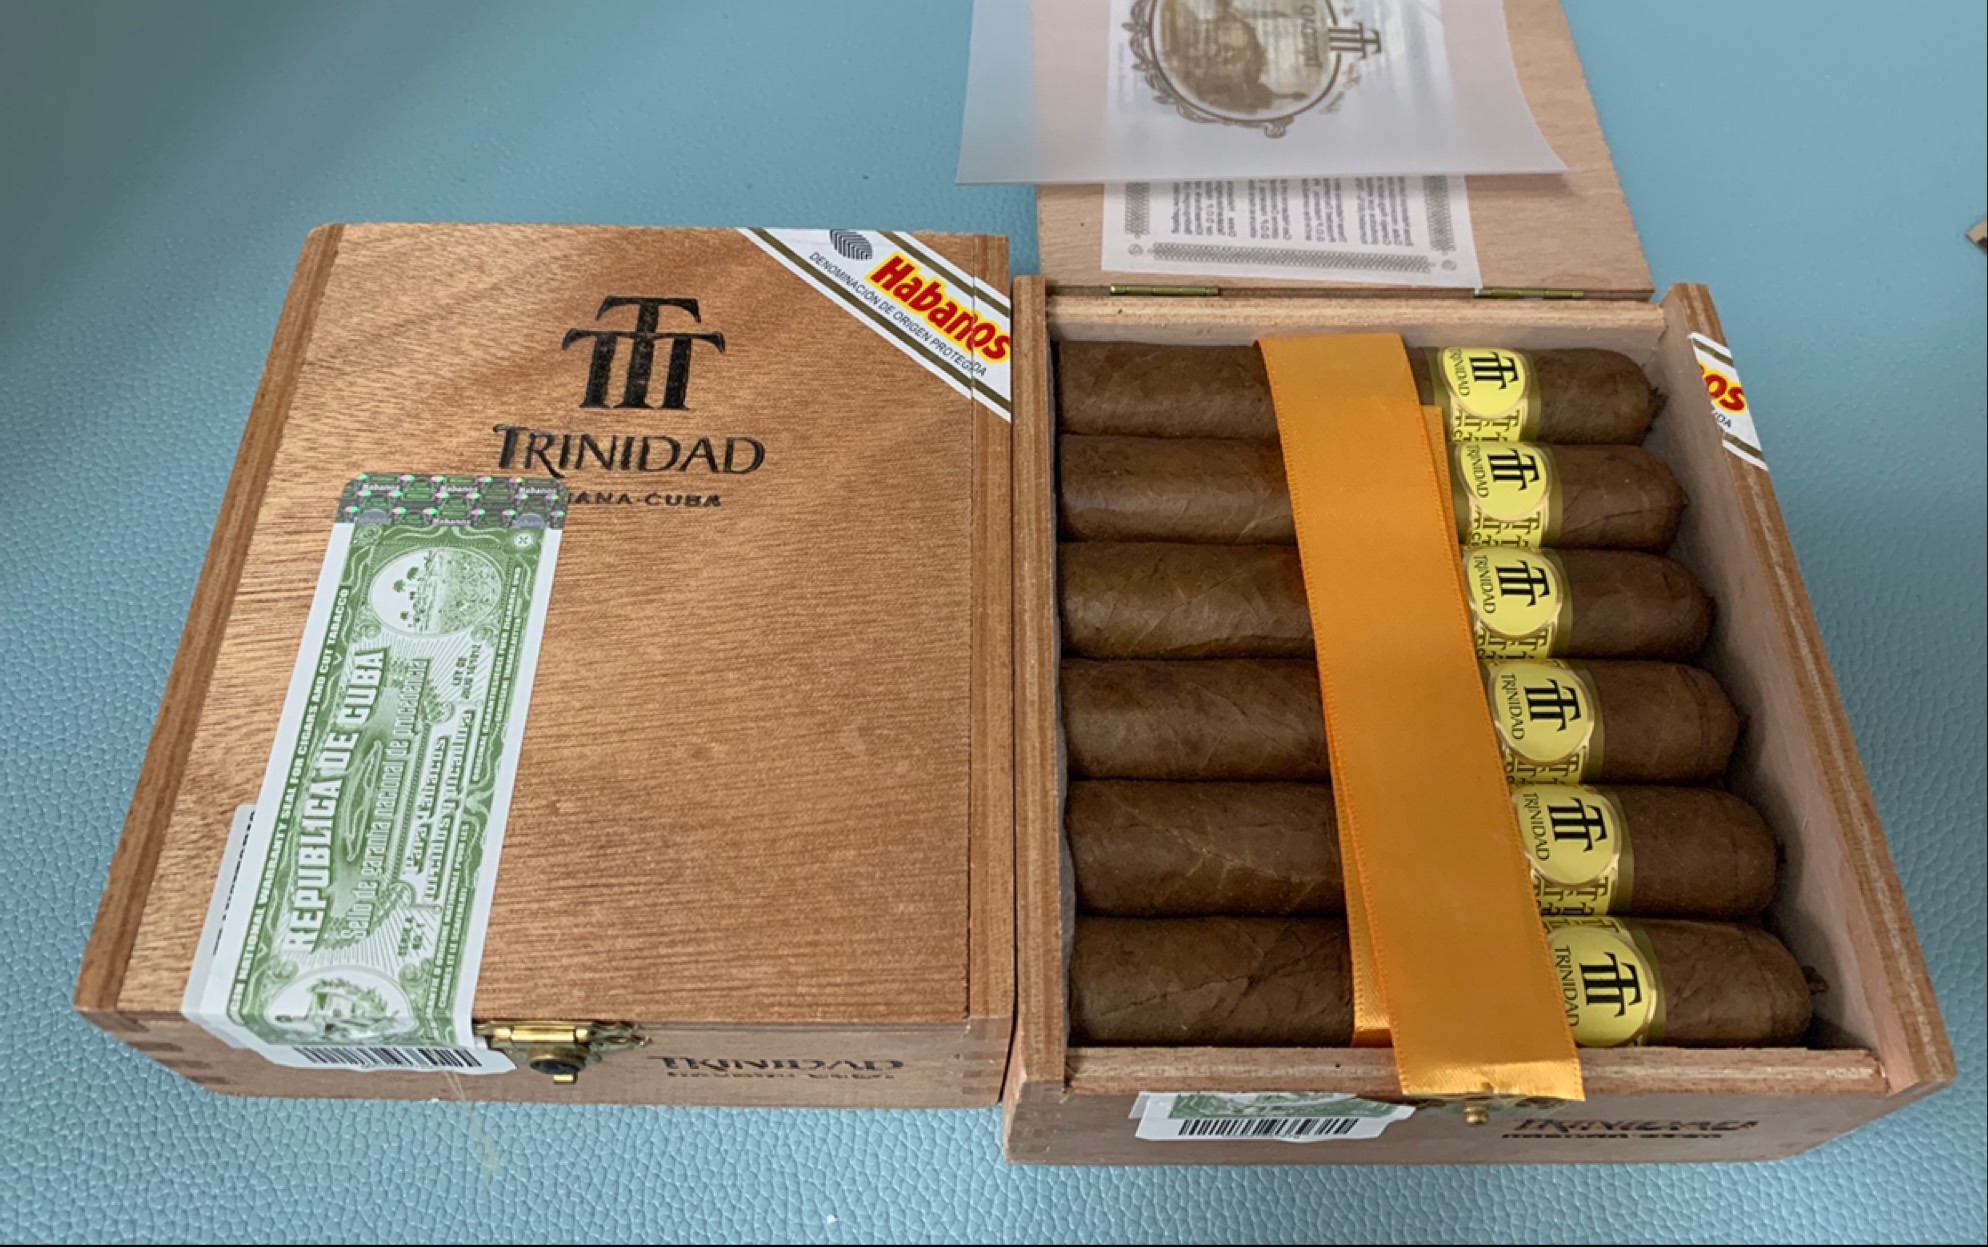 特立尼达特洛瓦雪茄图片